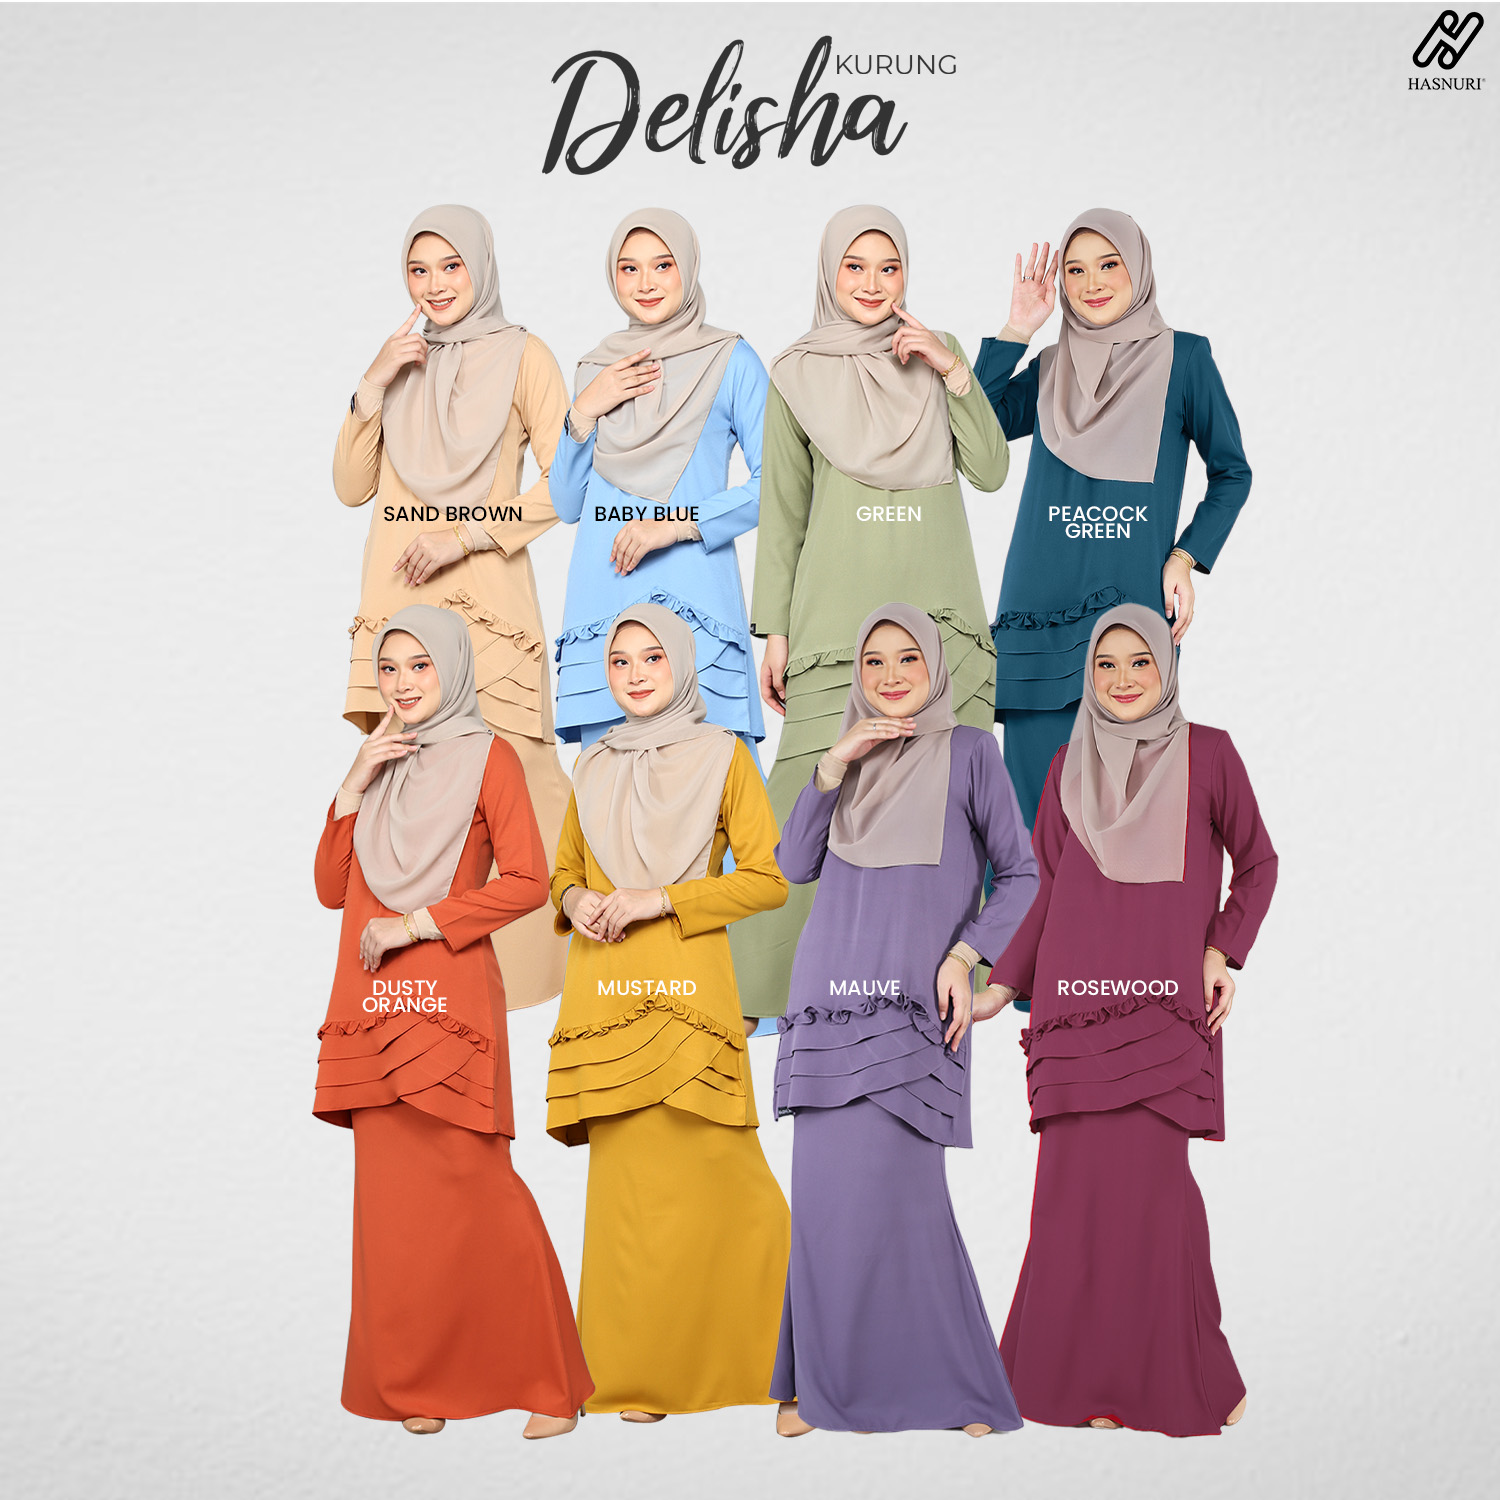 Kurung Delisha - Dusty Orange